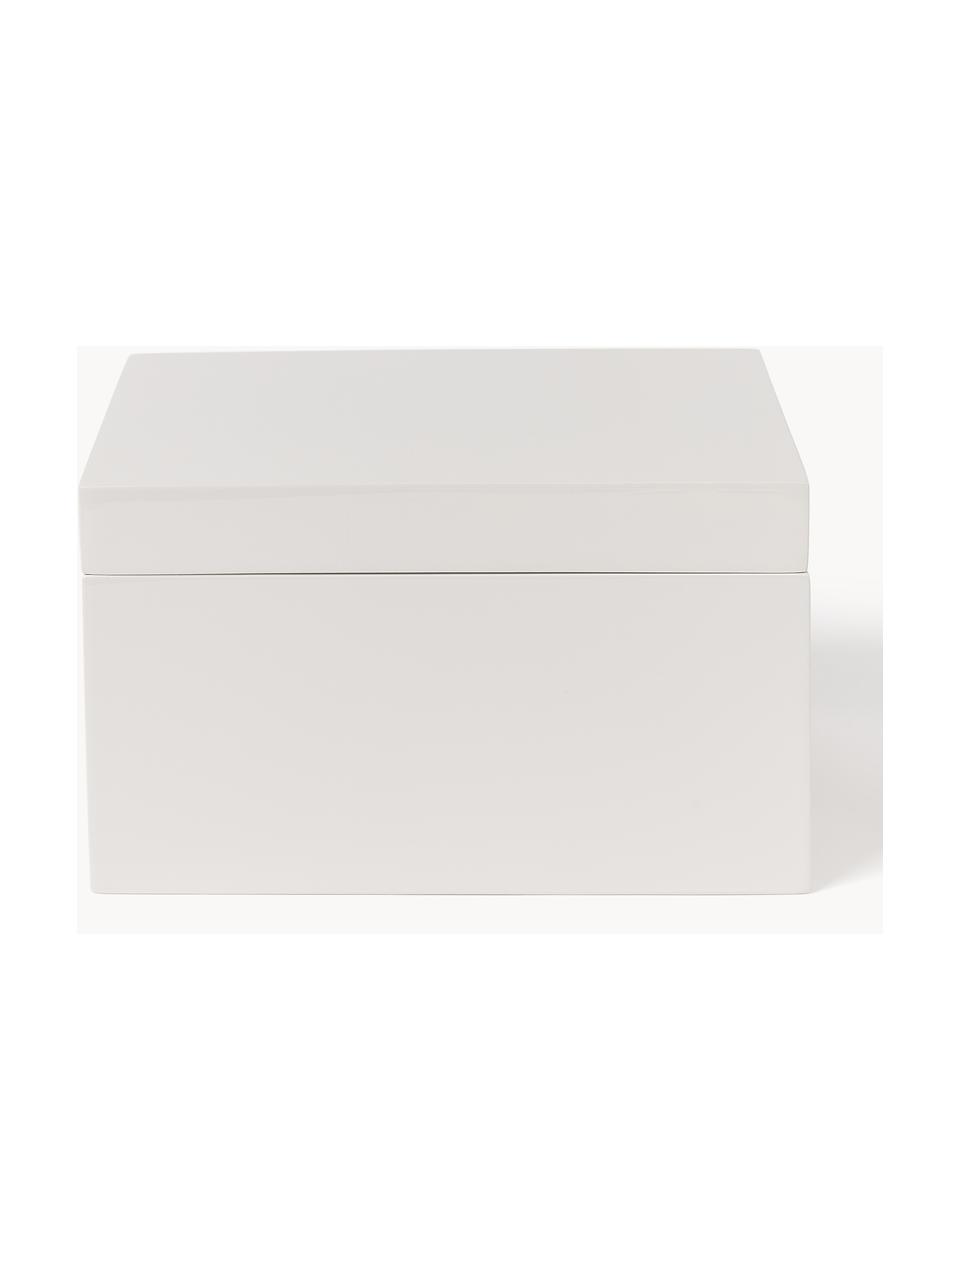 Sada úložných krabic Kylie, 2 díly, MDF deska (dřevovláknitá deska střední hustoty), Světle šedá, starorůžová, Sada s různými velikostmi